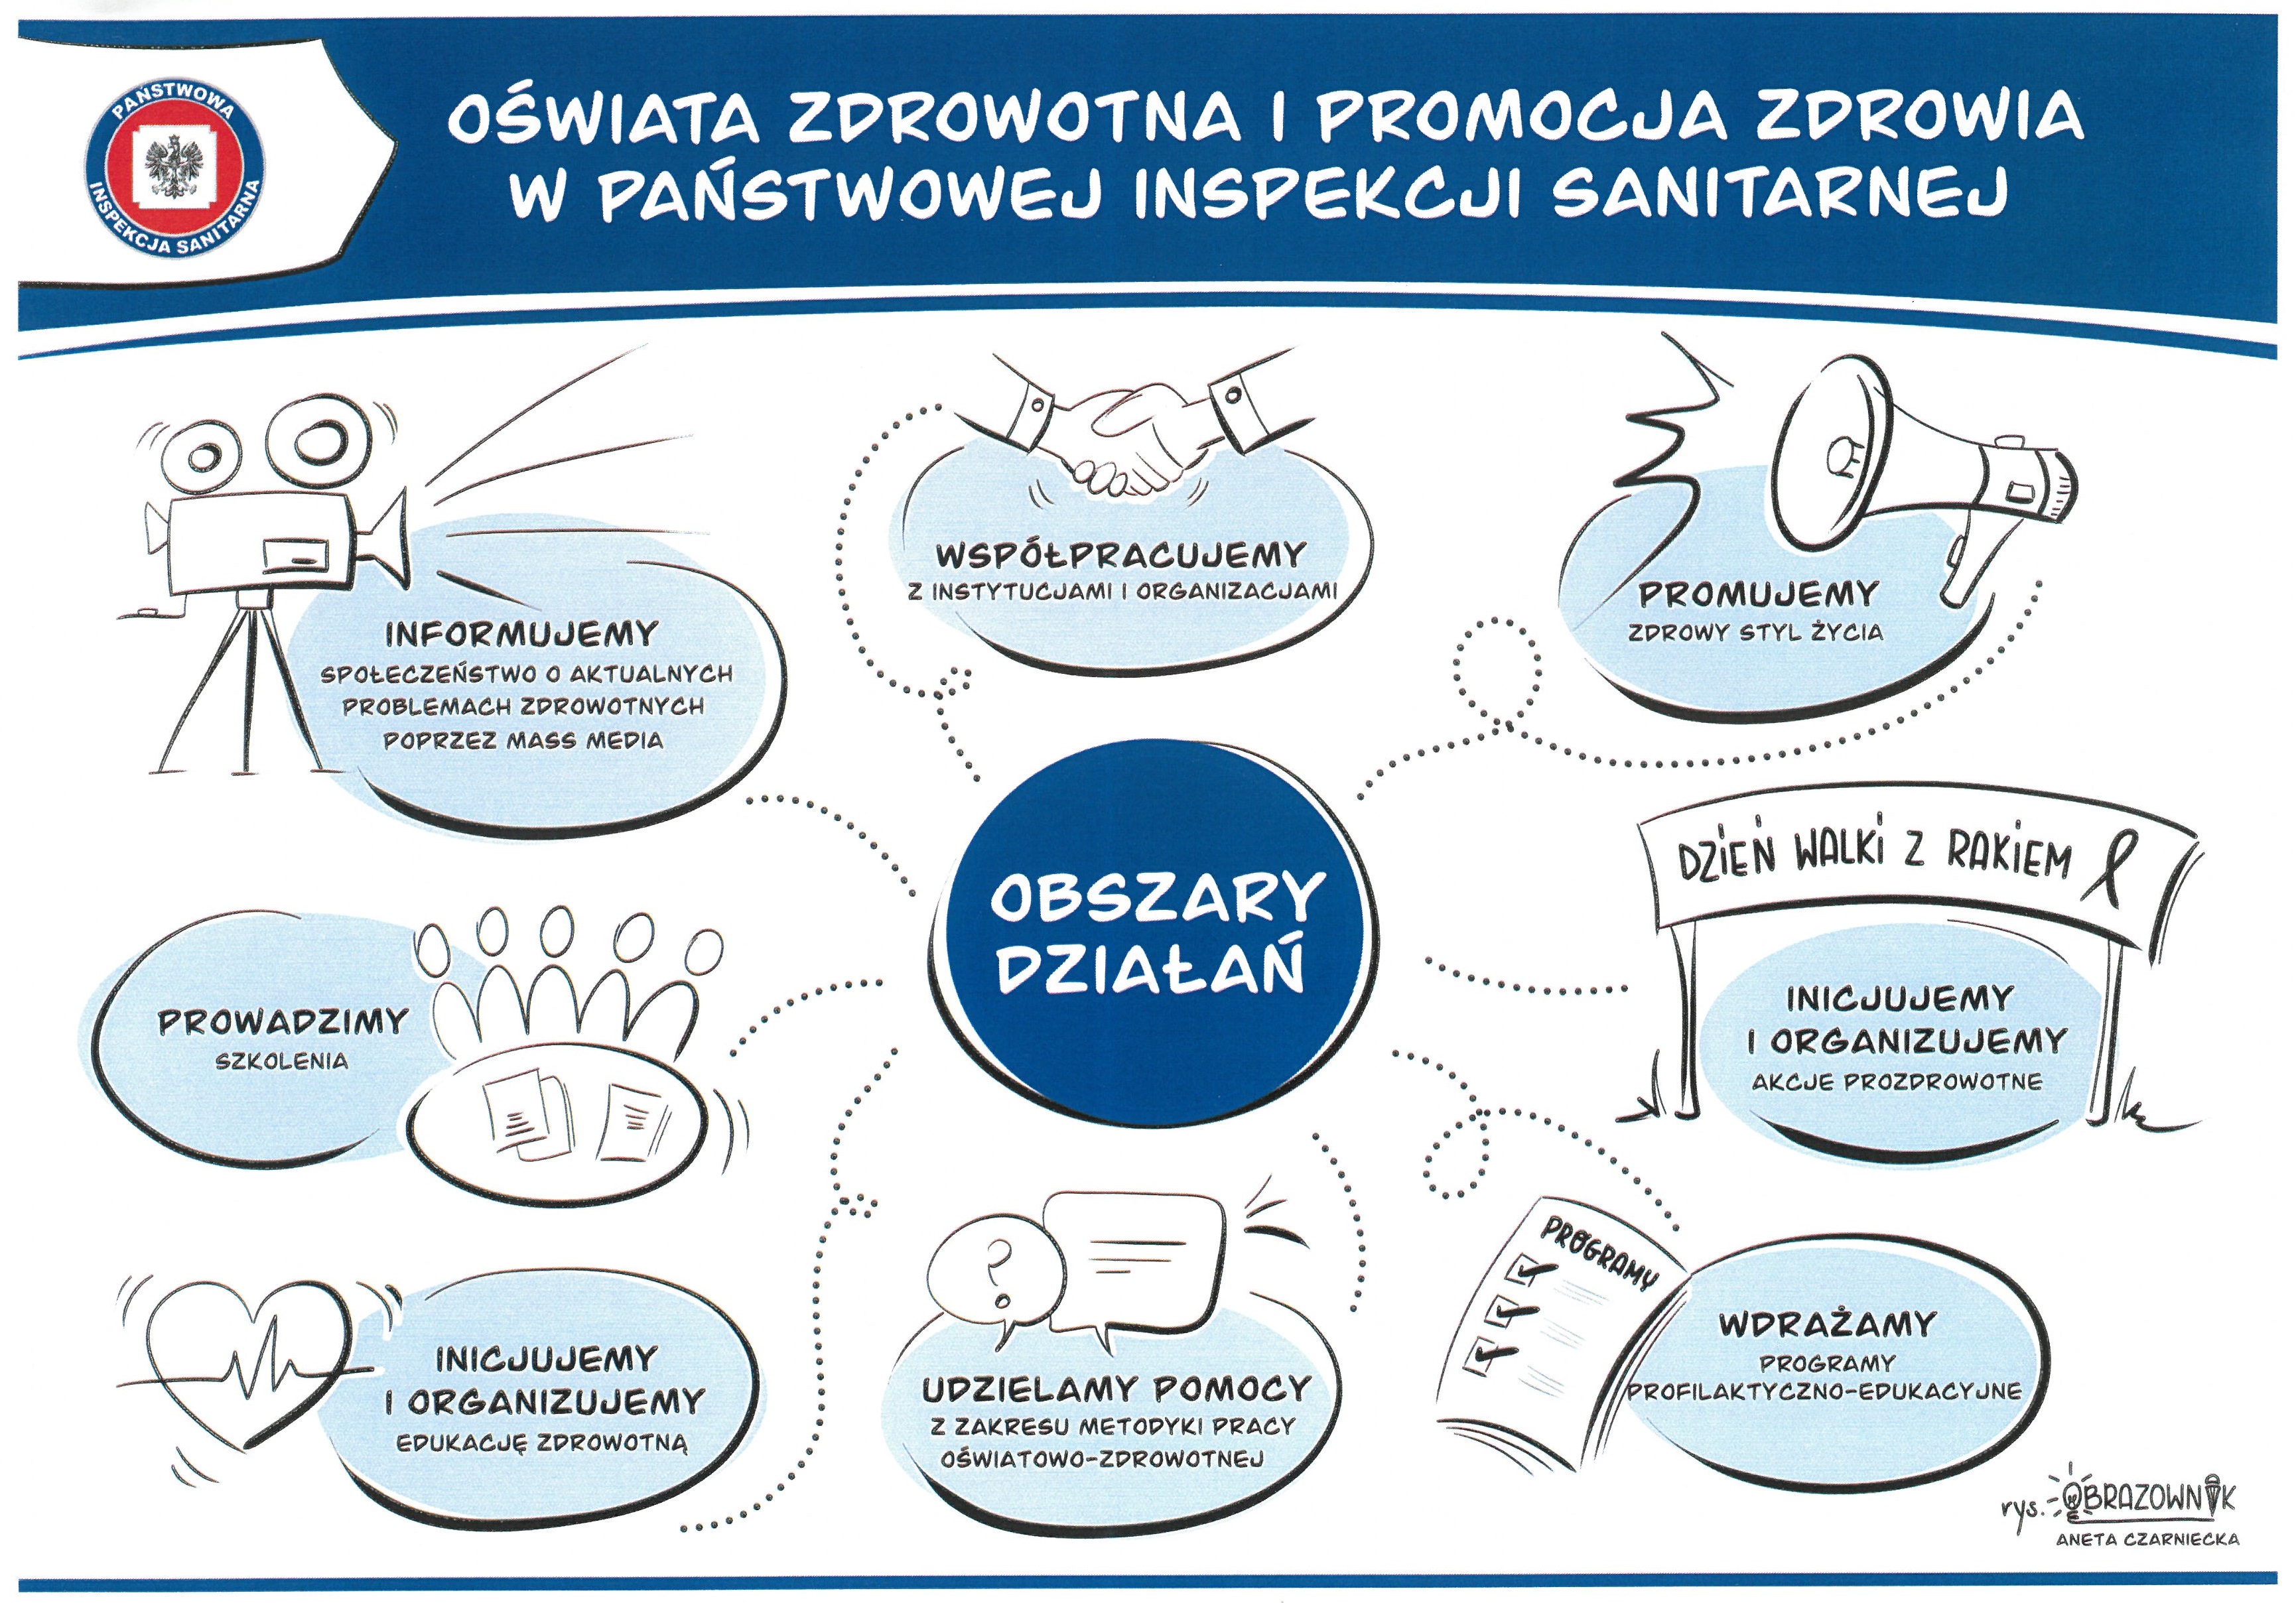 Graficzne oraz słowne przedstawienie obszaru działań Oświaty Zdrowotnej i Promocji Zdrowia Państwowej Inspekcji Sanitarnej autorstwa Wojewódzkiej Stacji Sanitarno-Epidemiologicznej w Olsztynie.